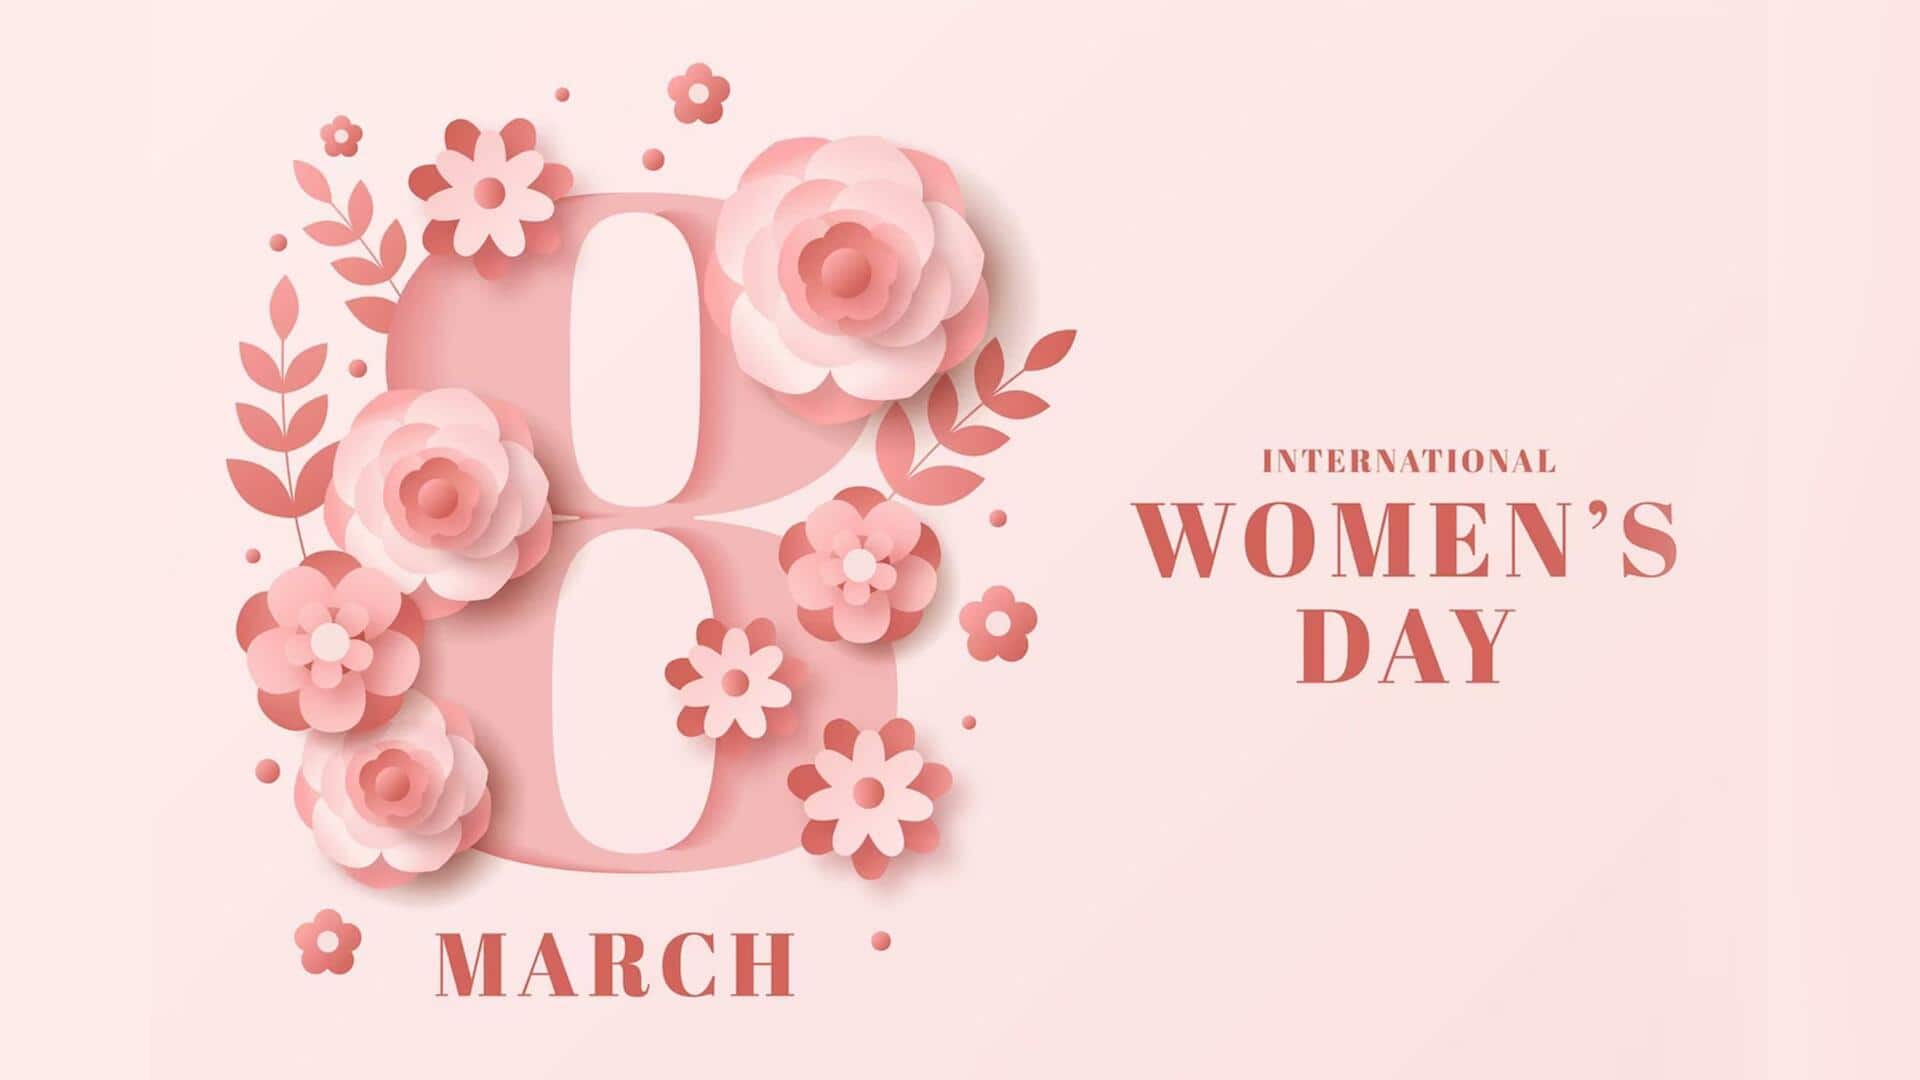 अंतरराष्ट्रीय महिला दिवस: इस दिन को मनाने का कारण, महत्व और थीम